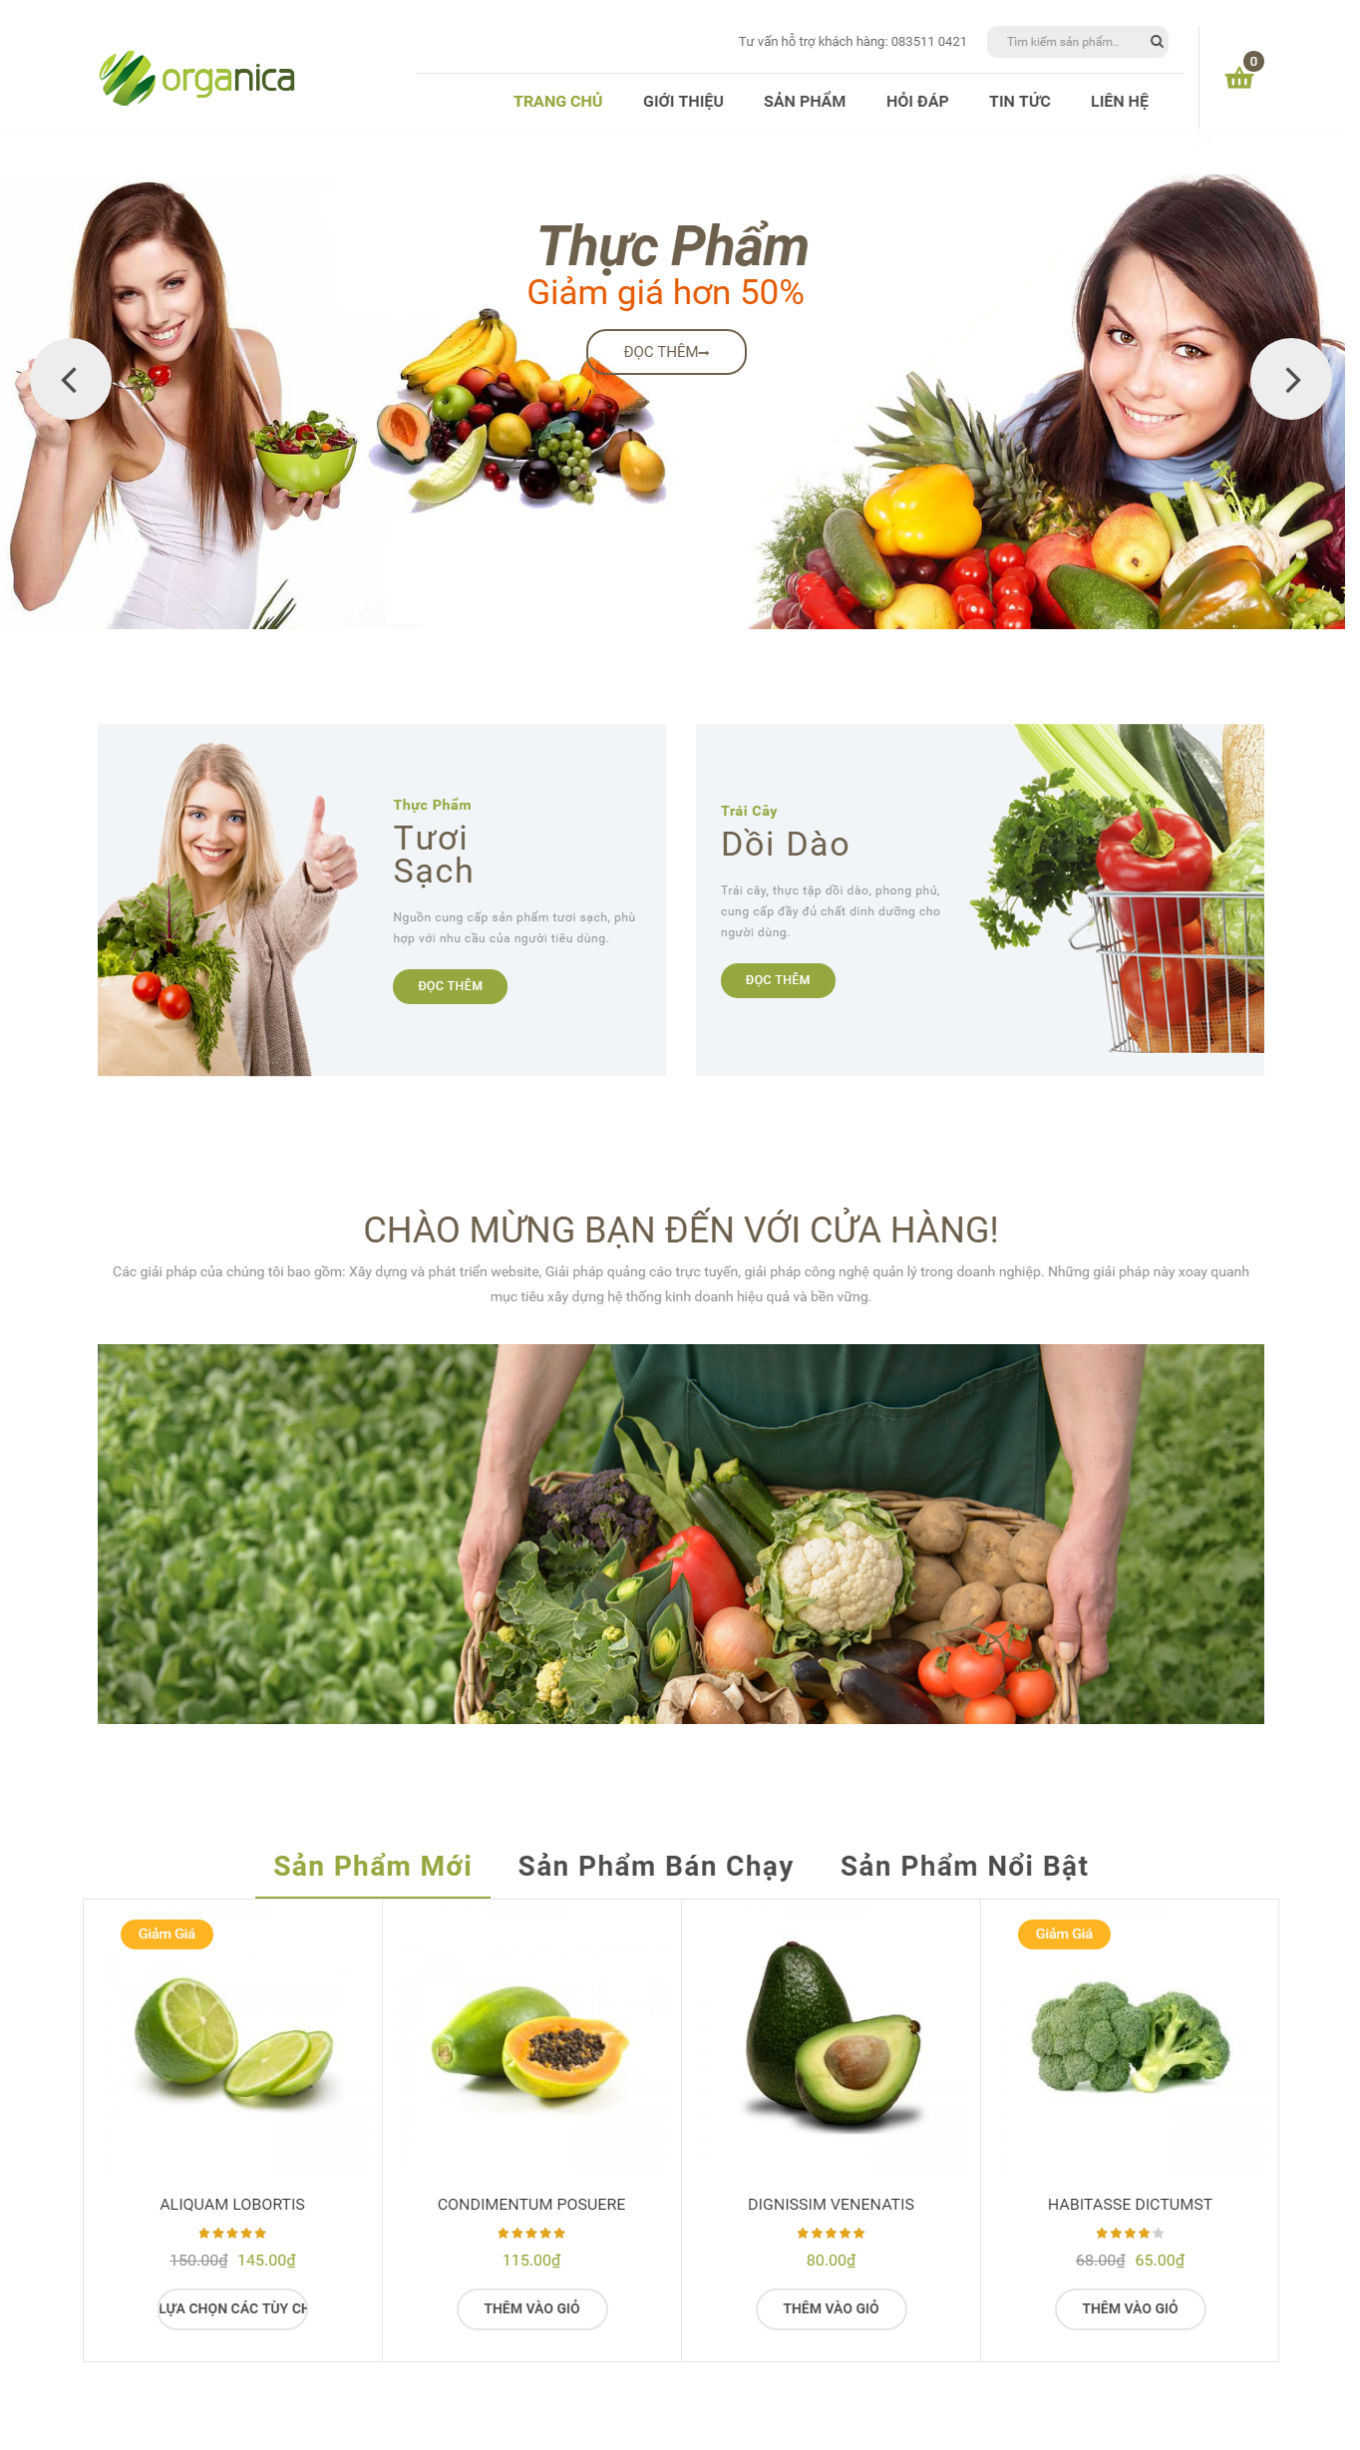 Mẫu website bán hàng thực phẩm - Organica5